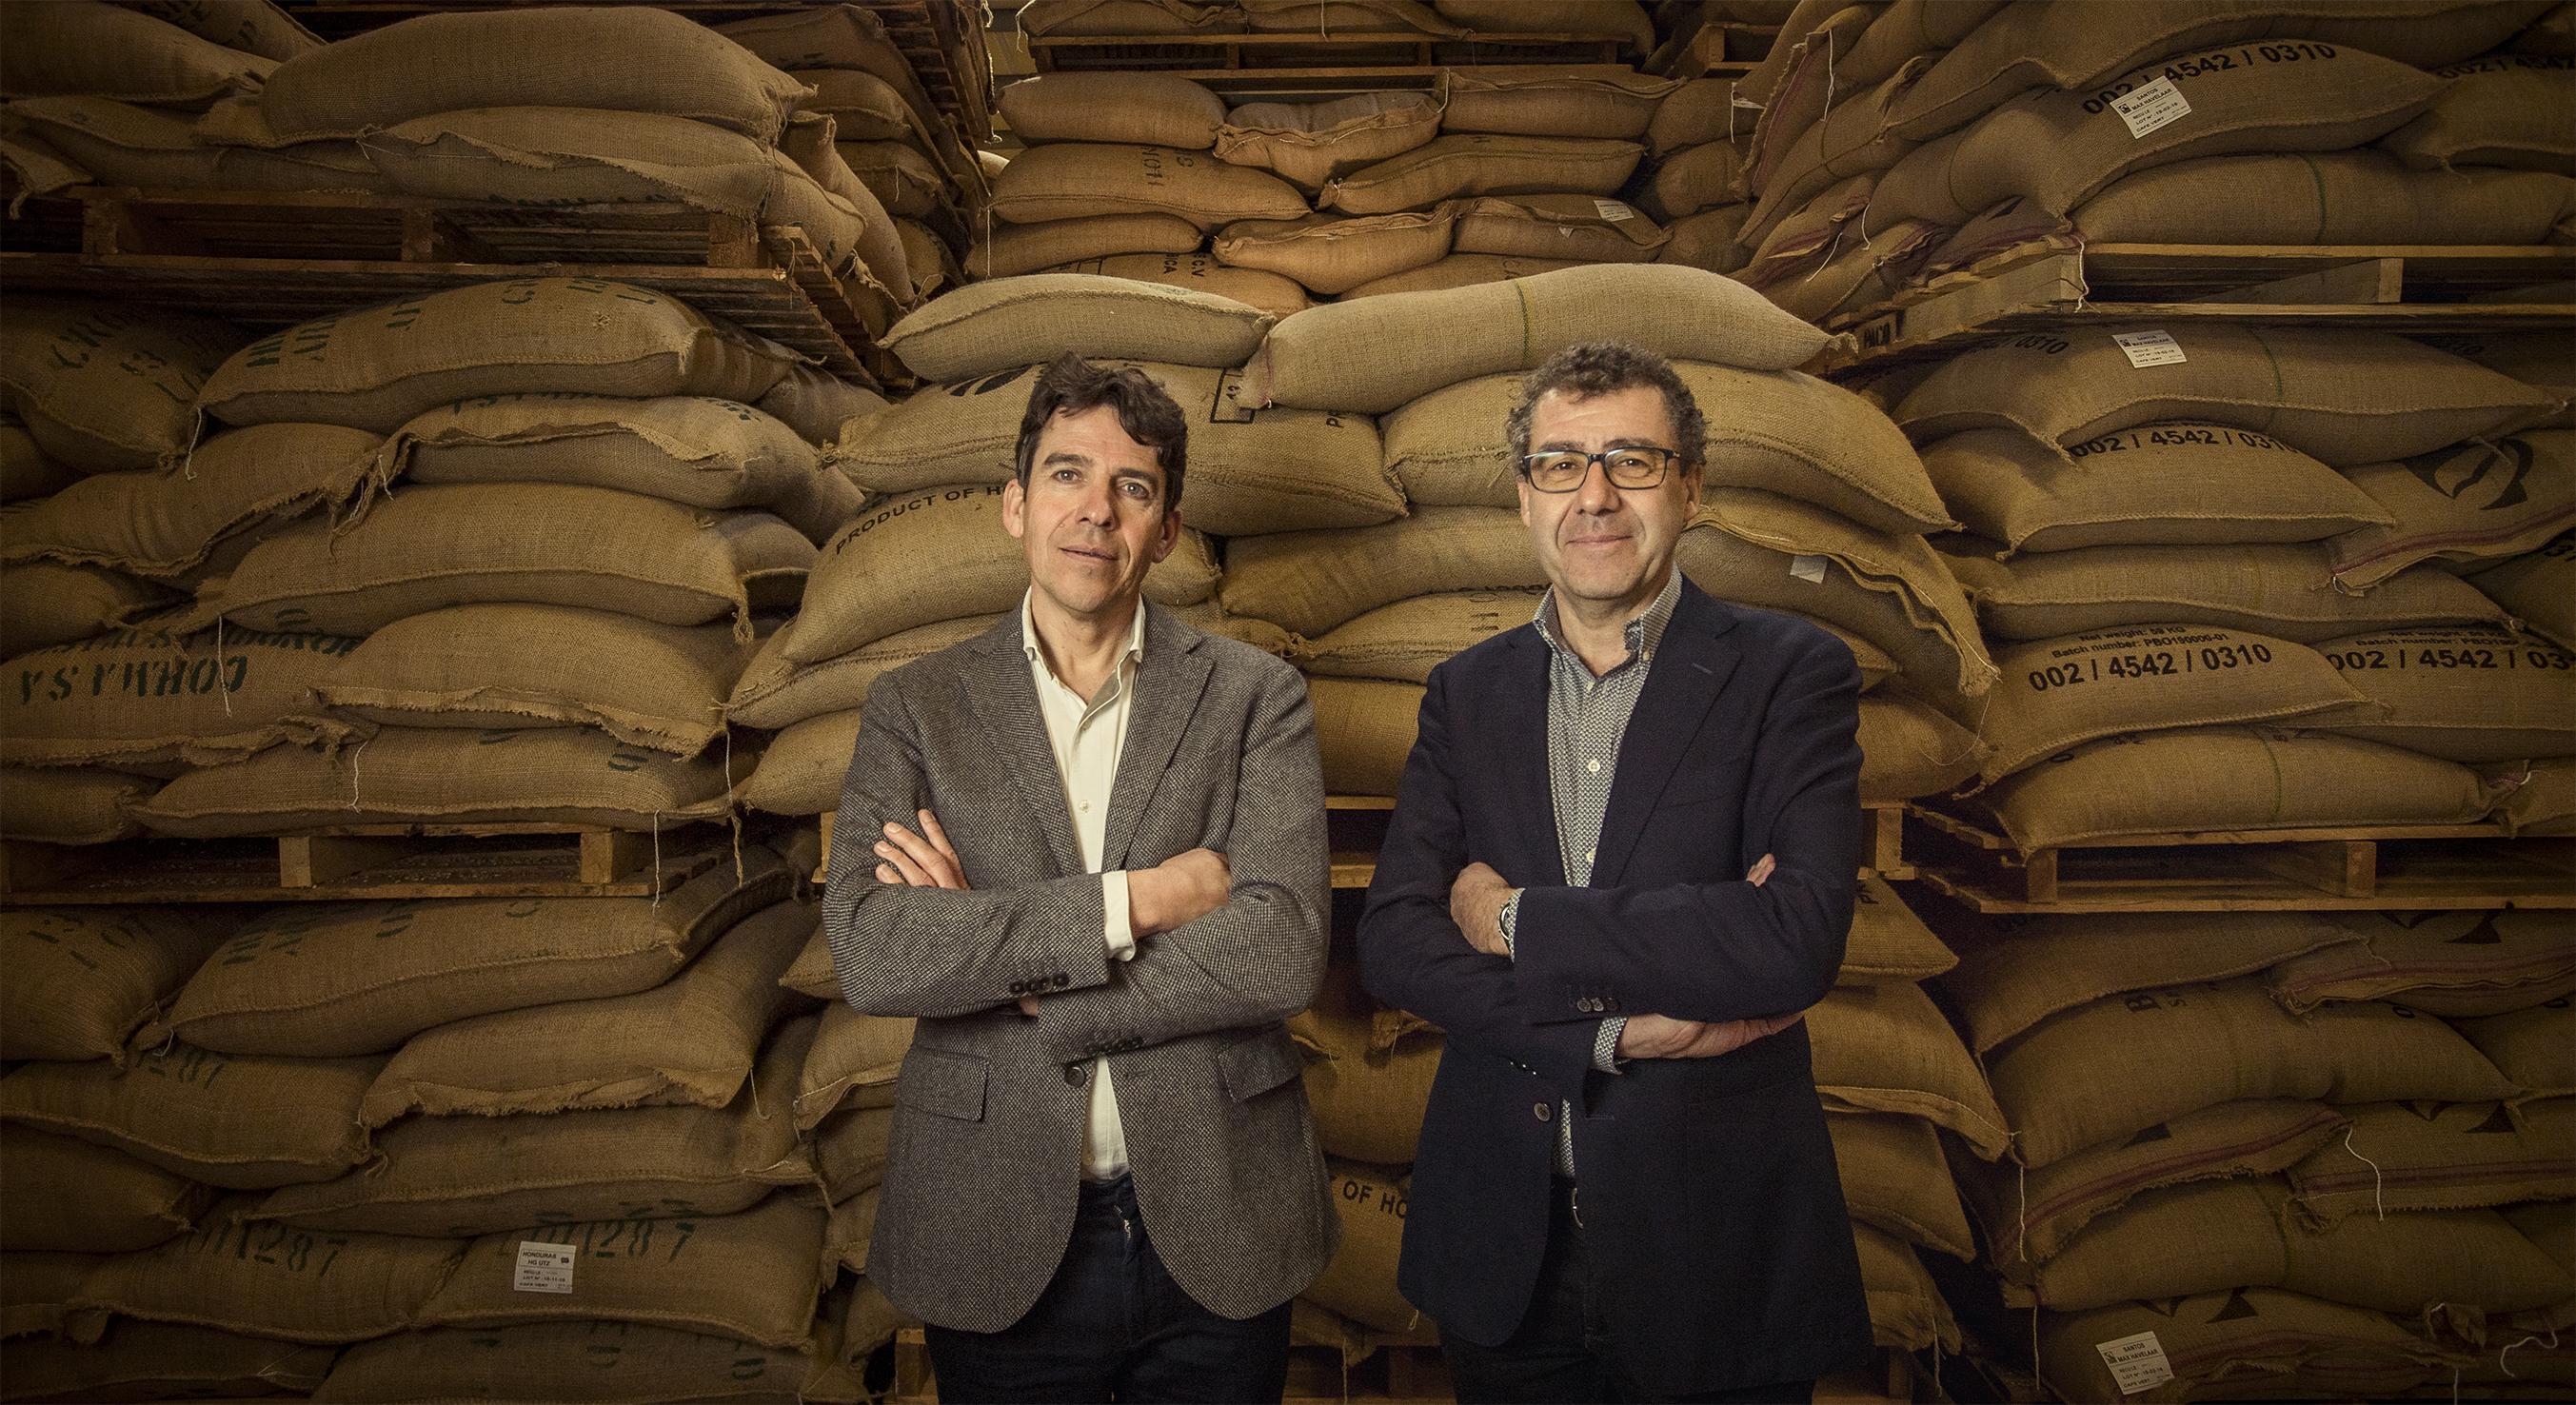 Michel en Benoit Liégeois voor de zakken groene koffie